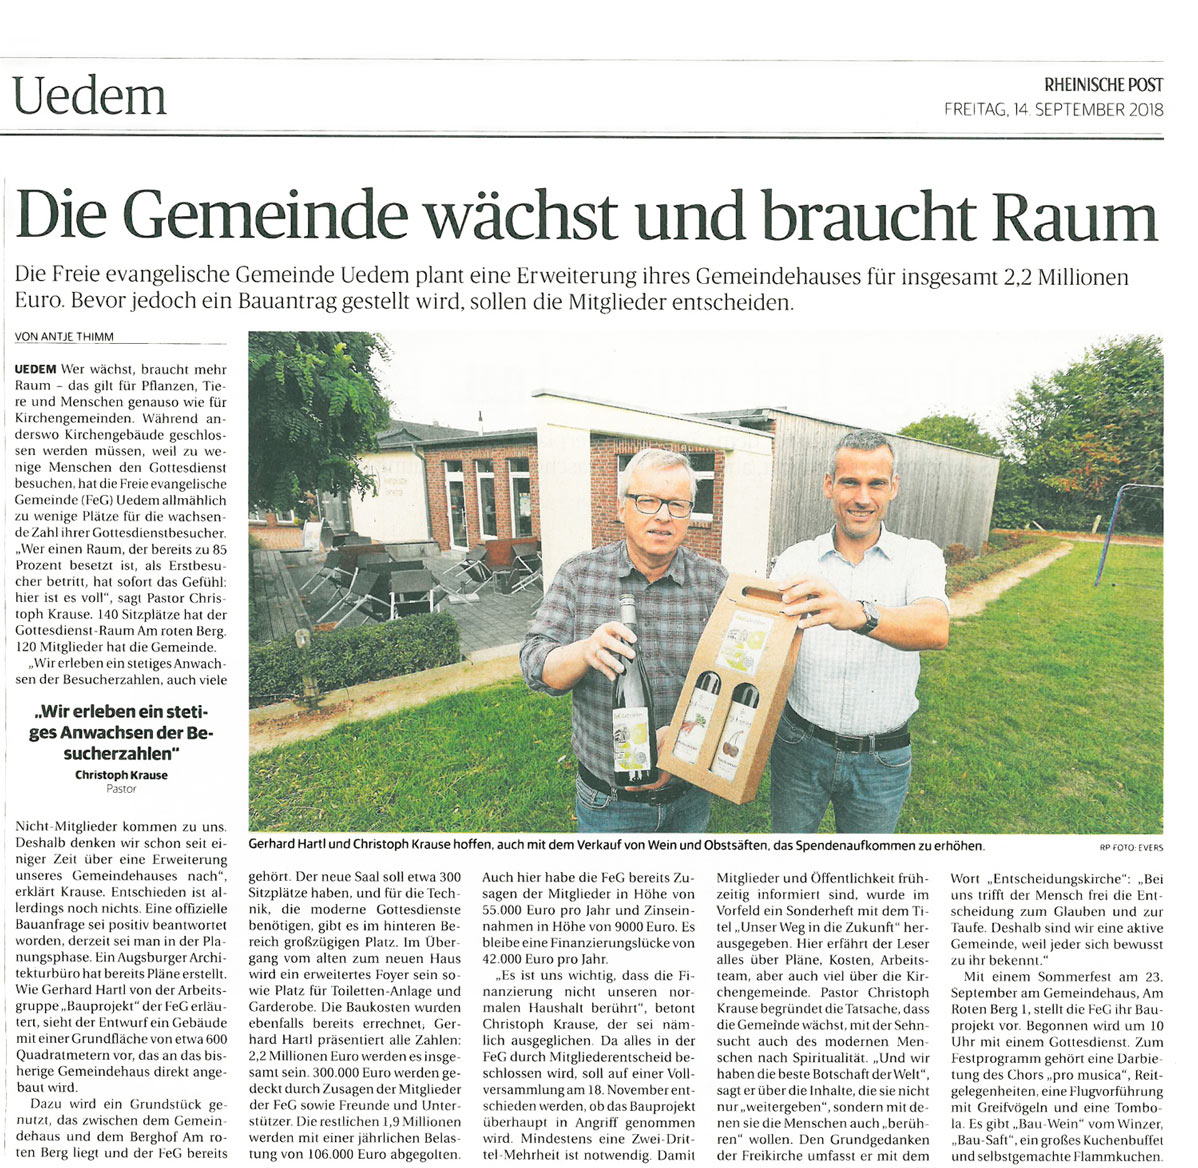 Zeitungsartikel vom 14.09.2018 aus der Rheinische Post